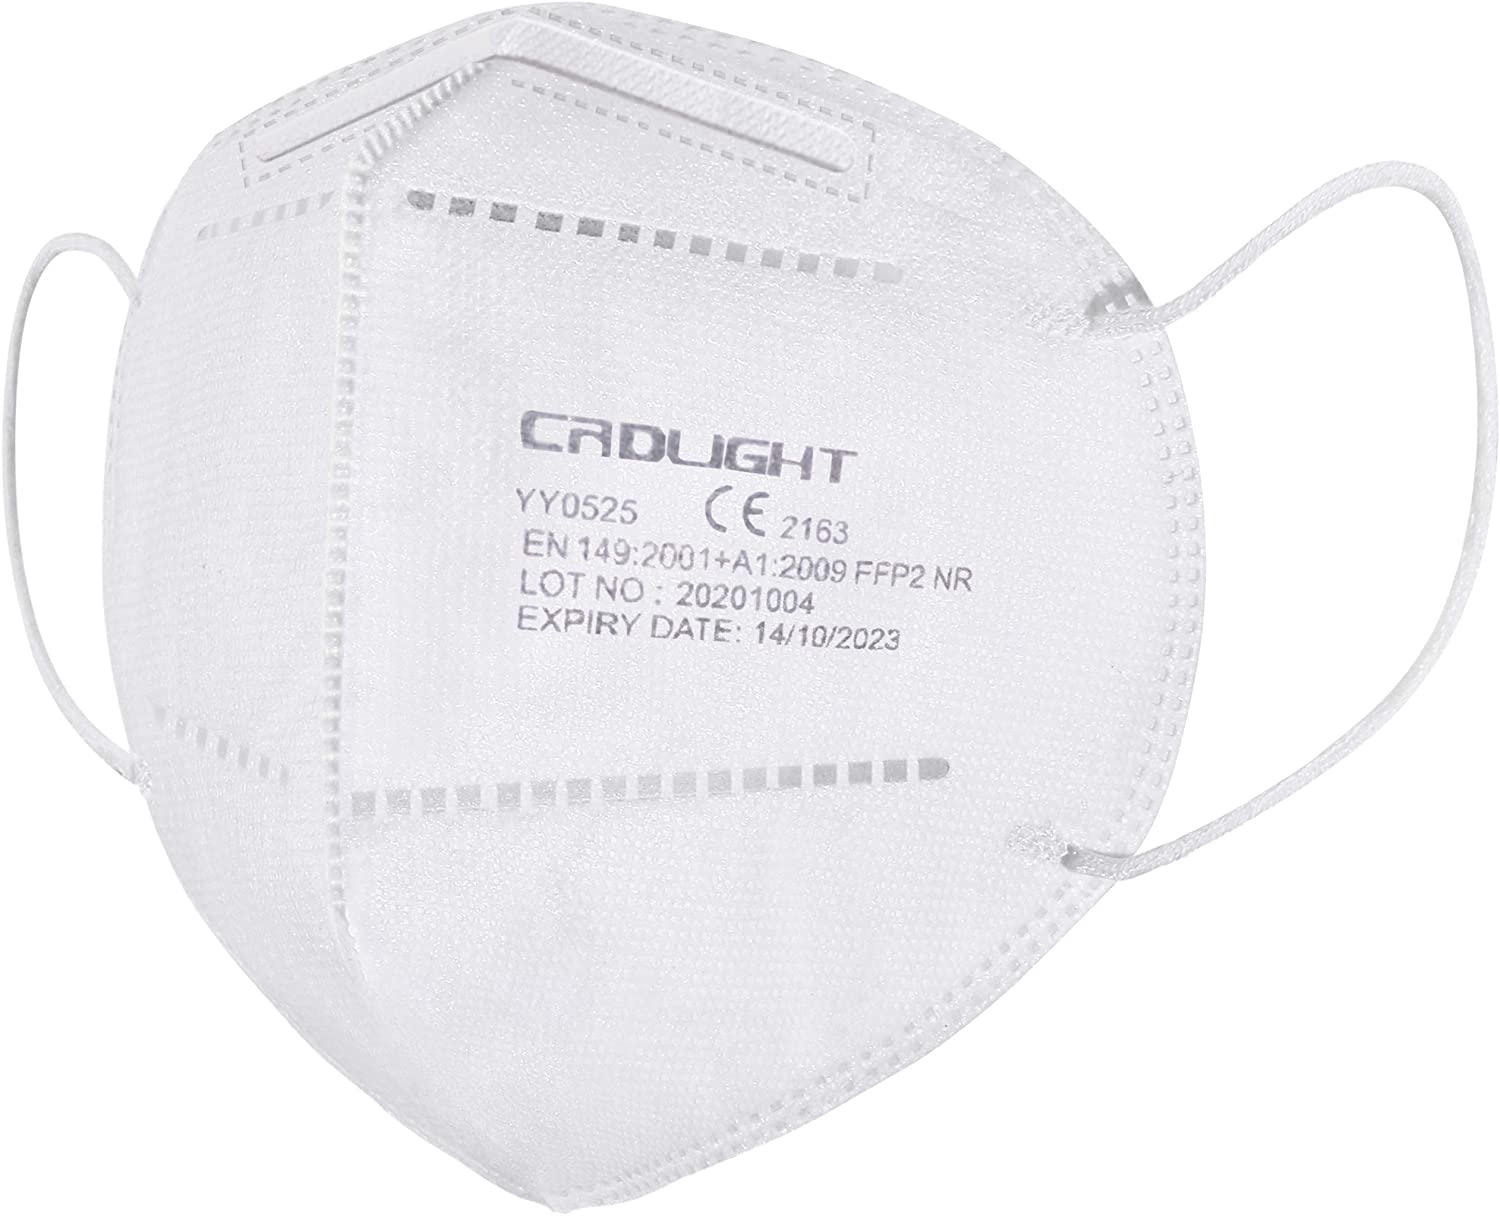 Crdlight FFP2 Maske Gesichtsmaske Mund Nasen Schutz einzeln verpackt